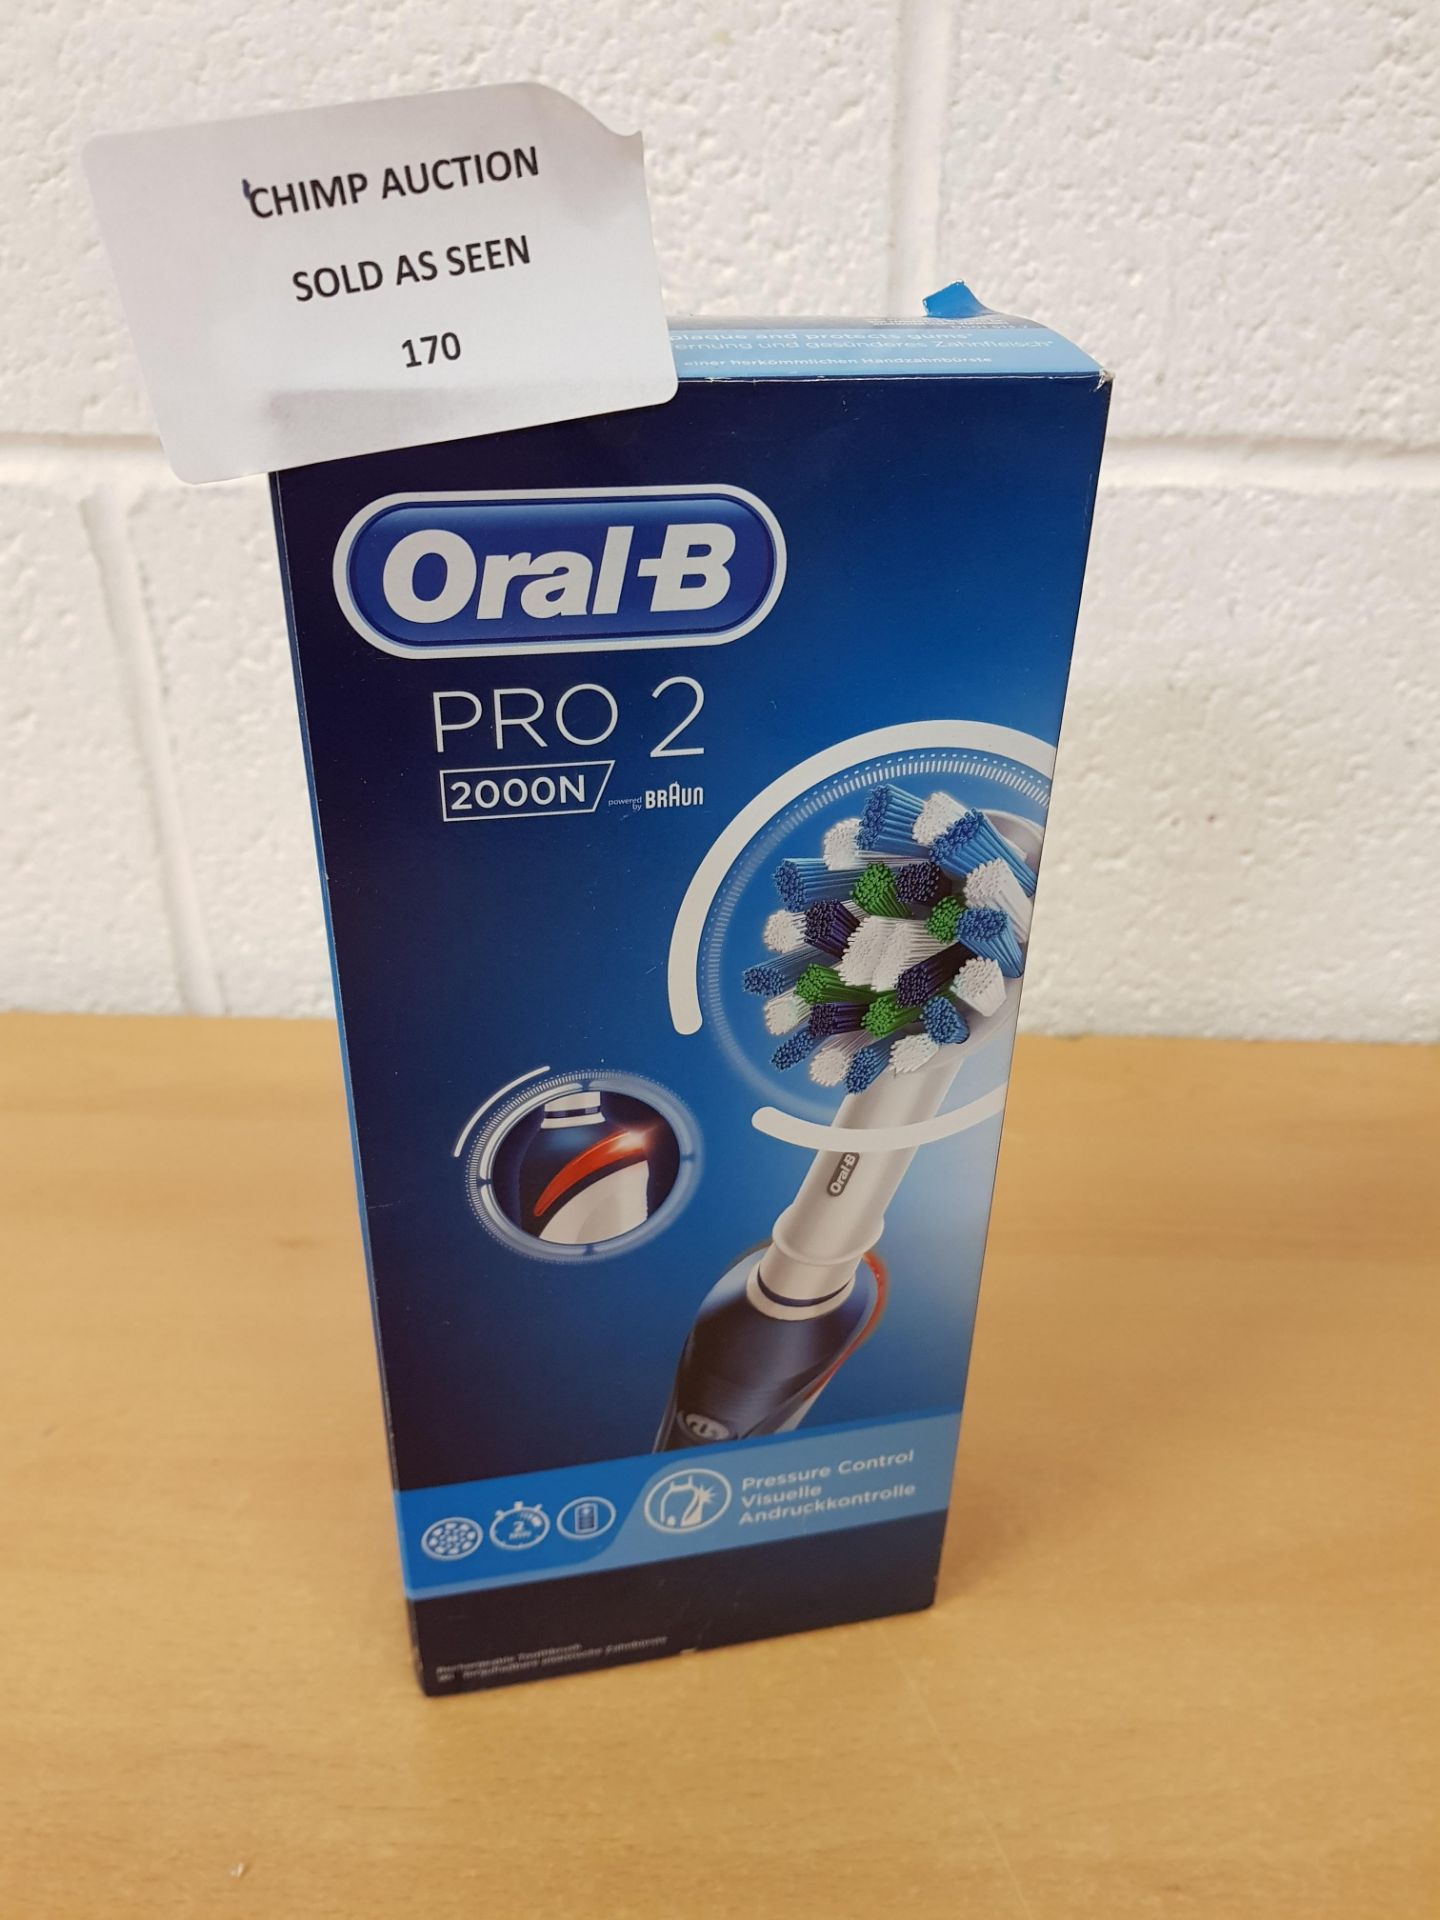 Oral-B Braun Pro 2 2000 electric toothbrush